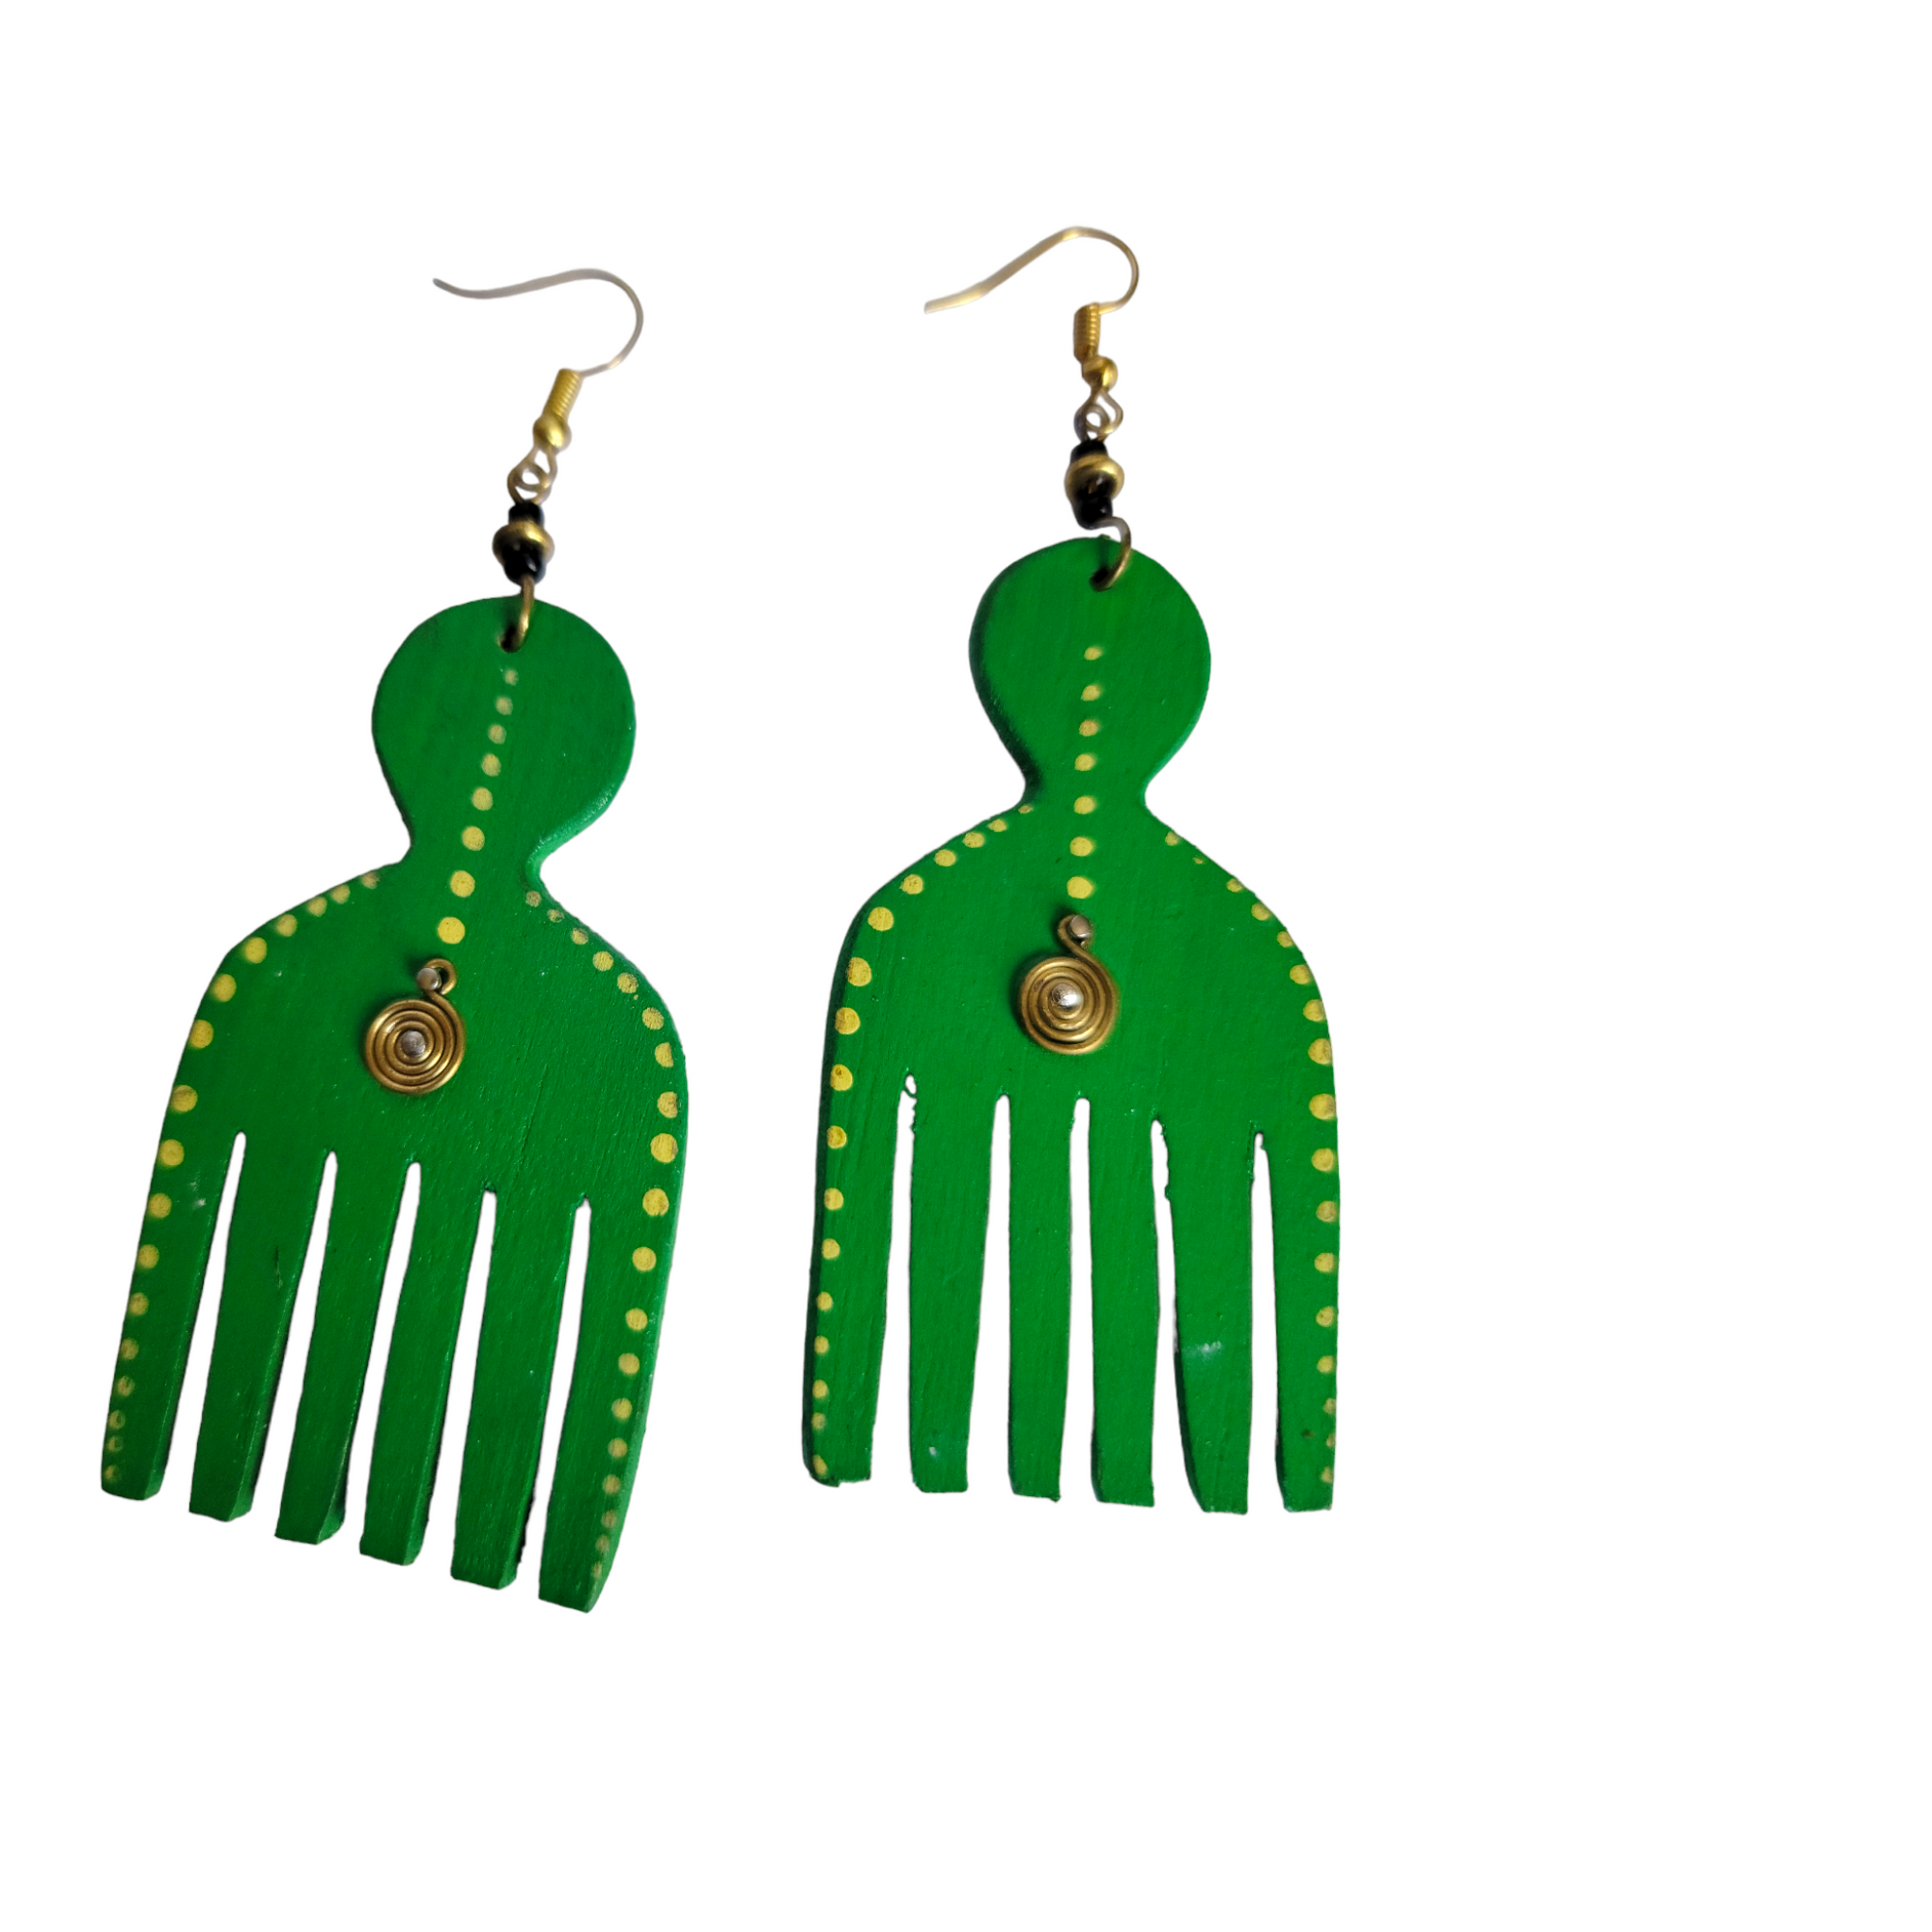 Green Wooden Comb Earrings